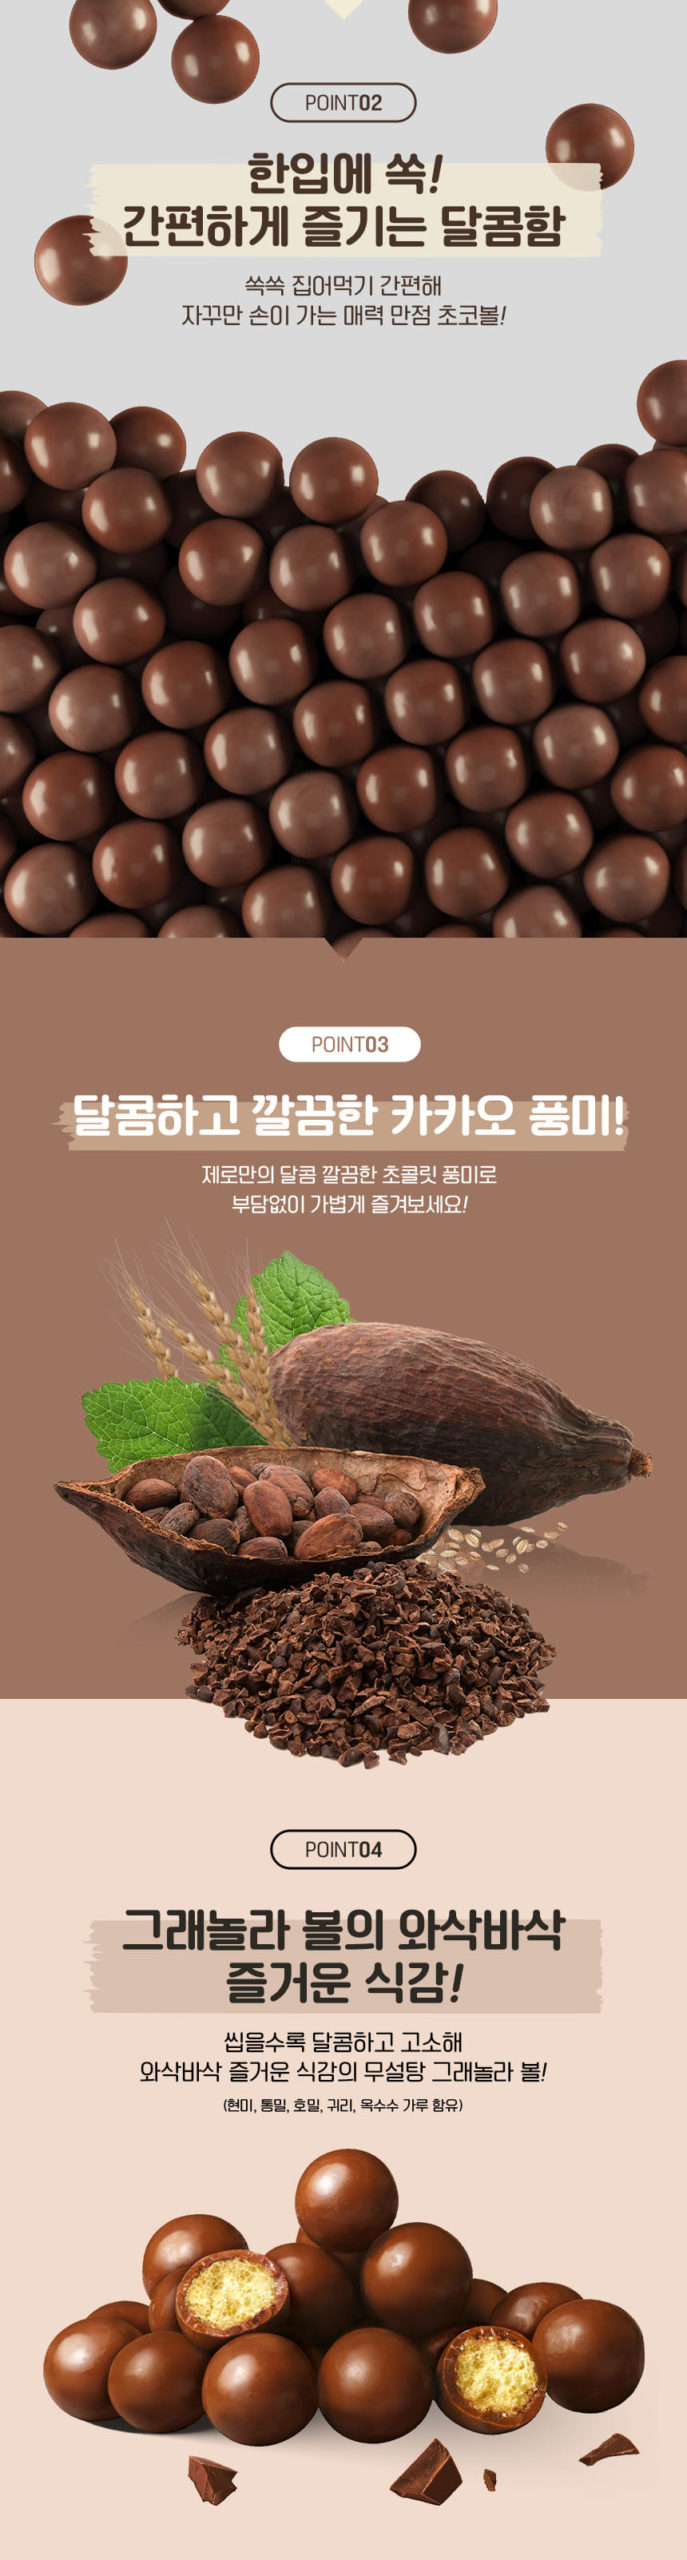 韓國食品-[롯데] 제로 크런치초코볼 34g